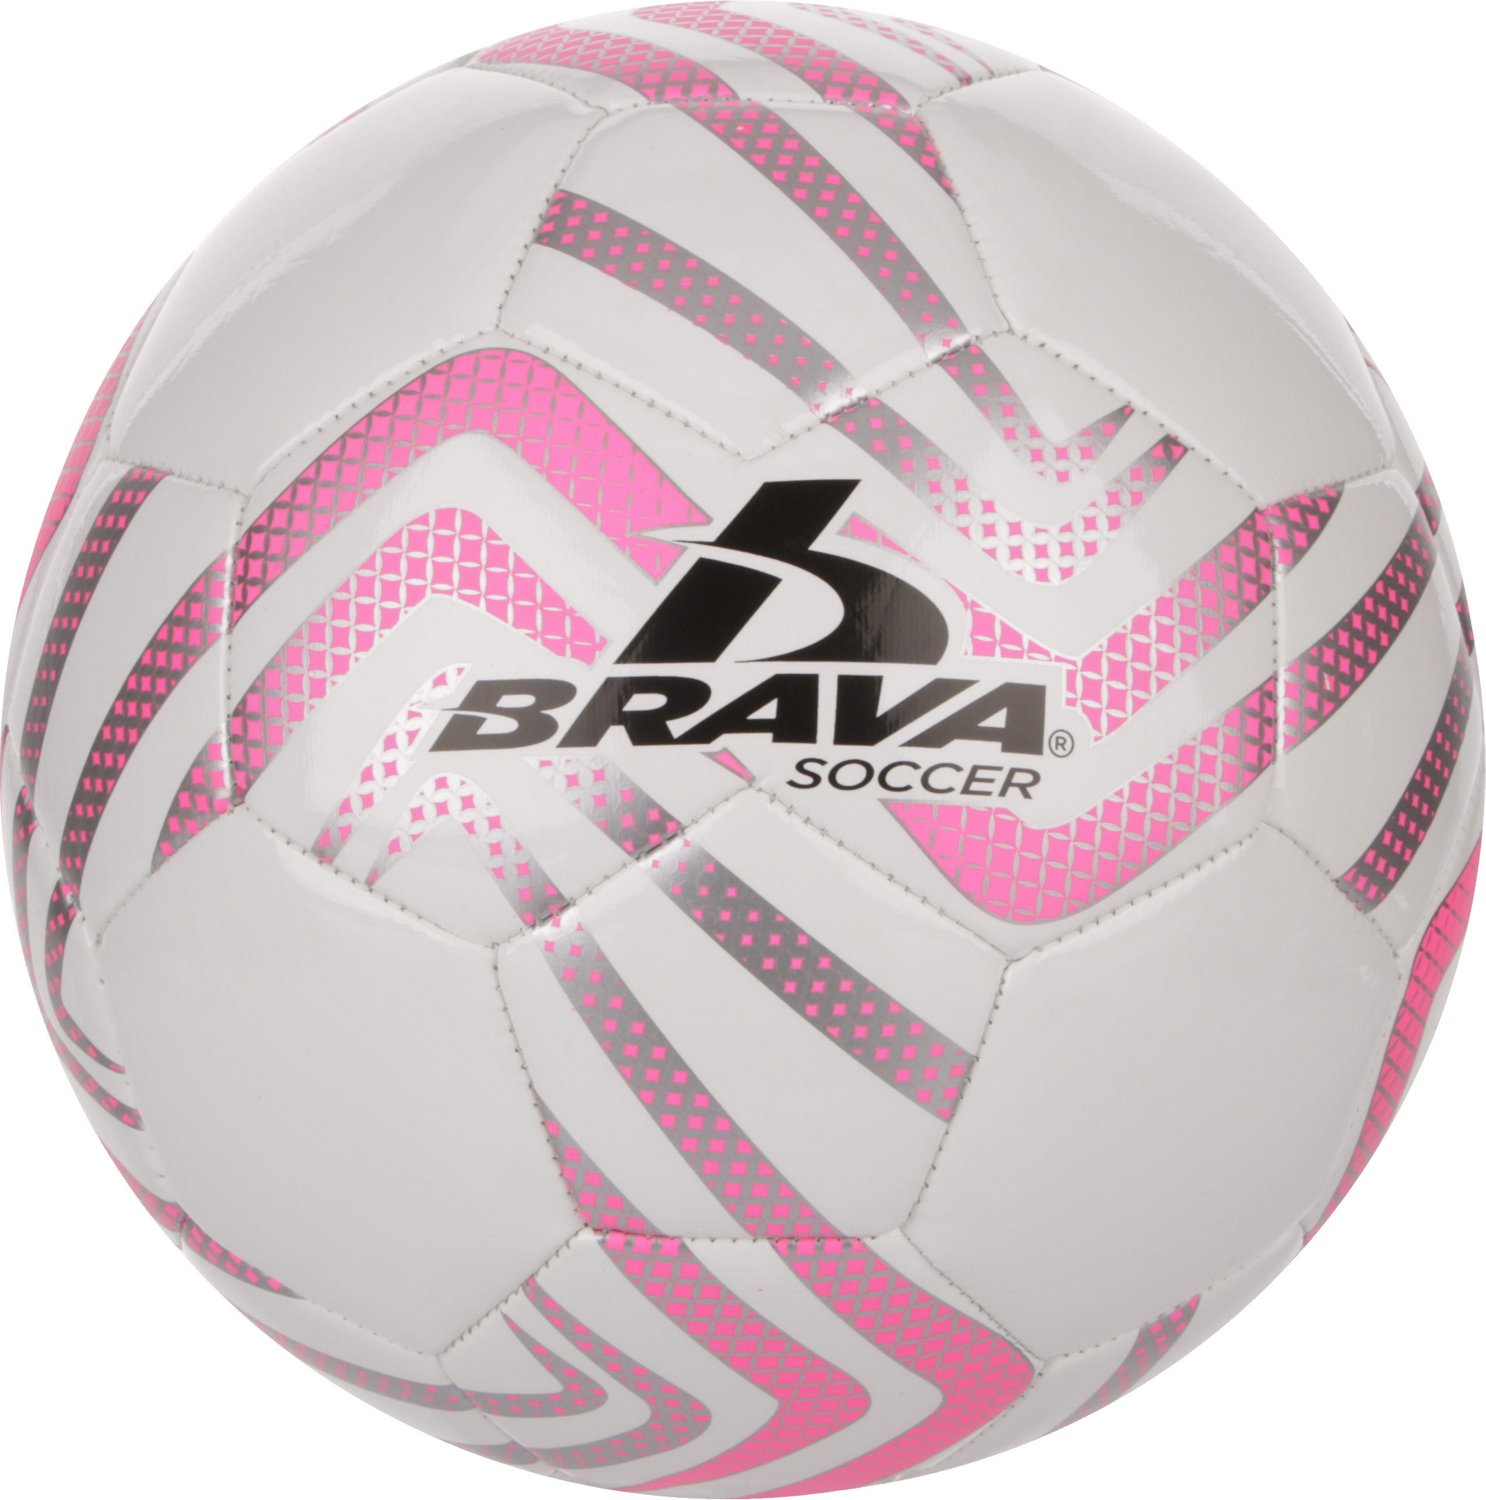 (Lot of 4 Soccer Balls) Brava Soccer Sweep Package Soccer Ball